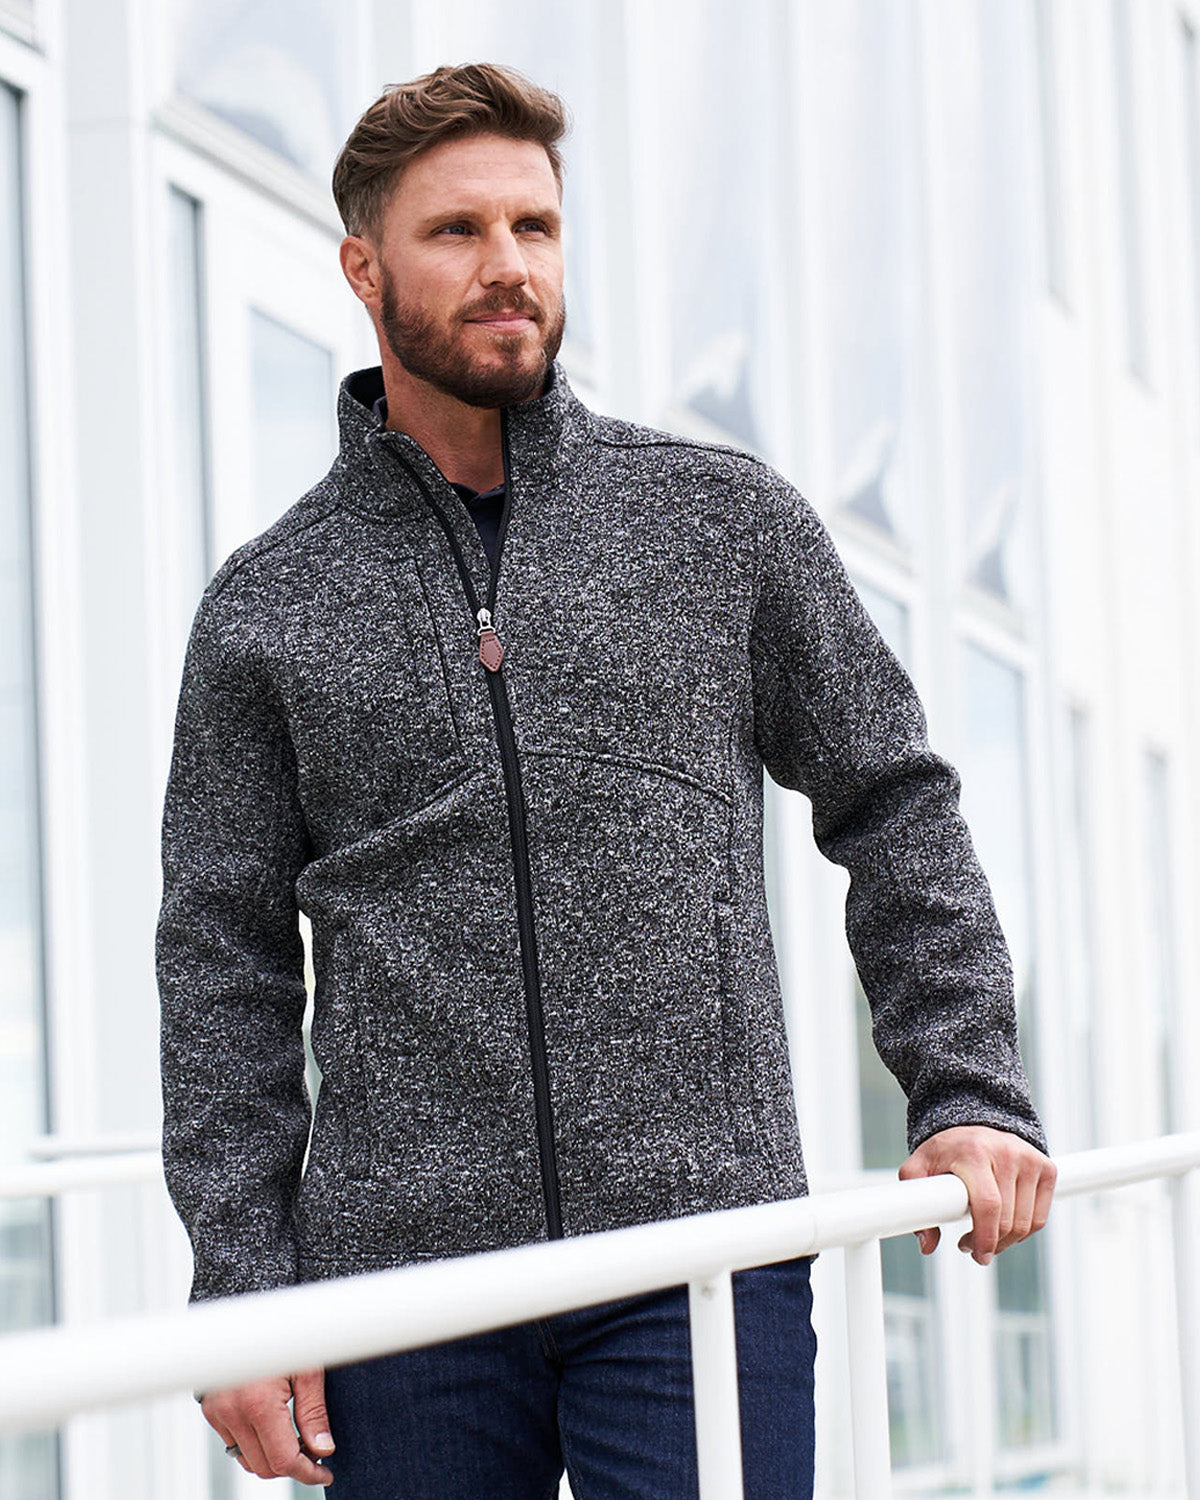 Inspire Men's Bonded Sweater Fleece Jacket